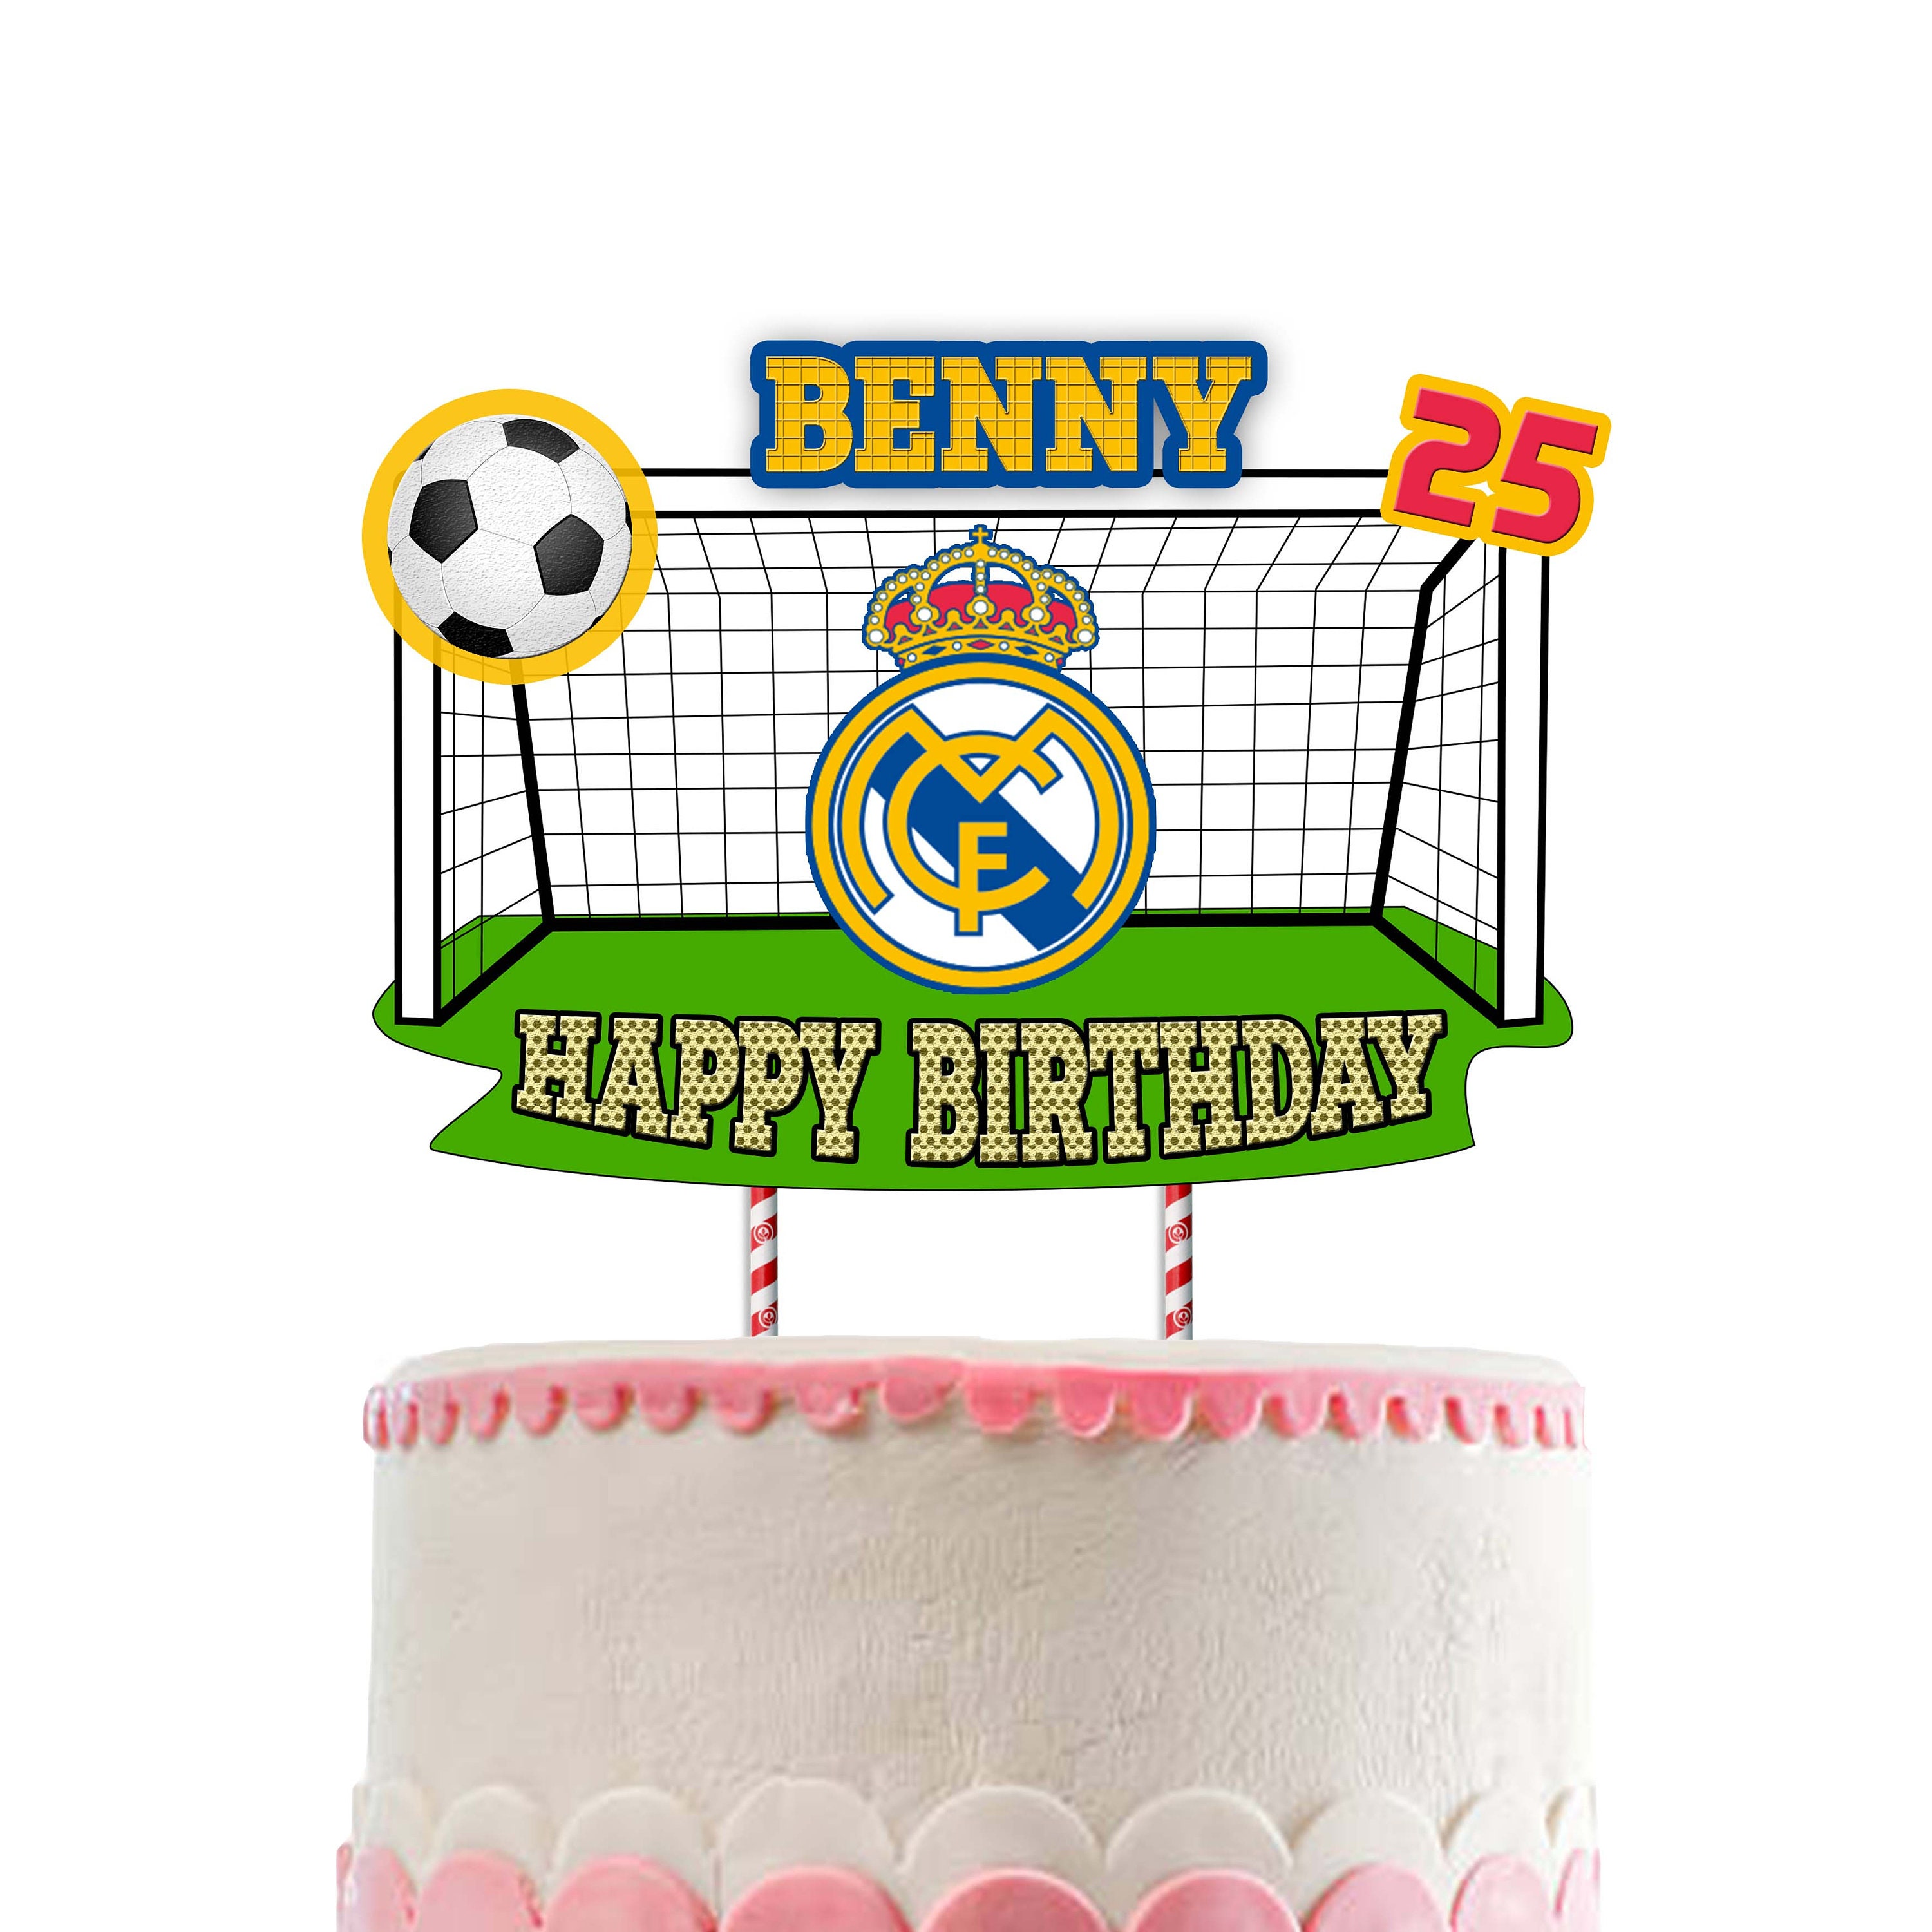 Toile de fond pour fête d'anniversaire Real Madrid CF Cristiano Ronaldo -  Décorations de fête d'anniversaire Benzema - Bannière de football -  Accessoires de fête pour garçons et enfants - 1,5 x